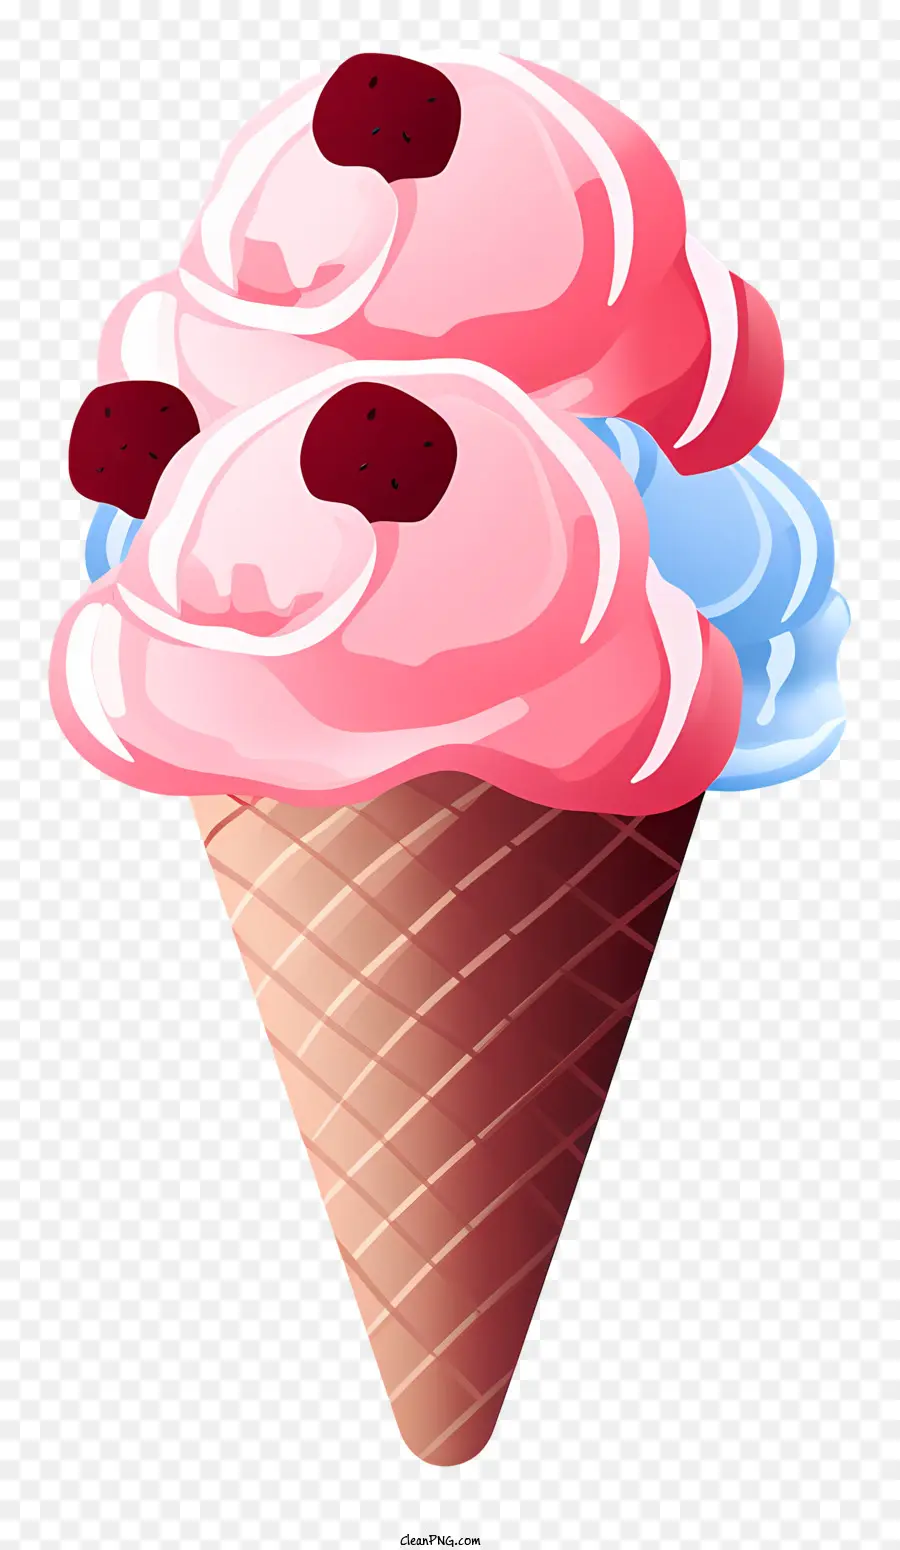 Pink Ice Cream Cone Raspberry Toppings Schokoladen Dip visuell ansprechendes Eis aufmerksamkeitsbekämpfter Dessert - Pink -Eiskegel mit Himbeer -Toppings und Schokoladendip auf schwarzem Hintergrund, visuell ansprechend und ruft Emotionen hervor